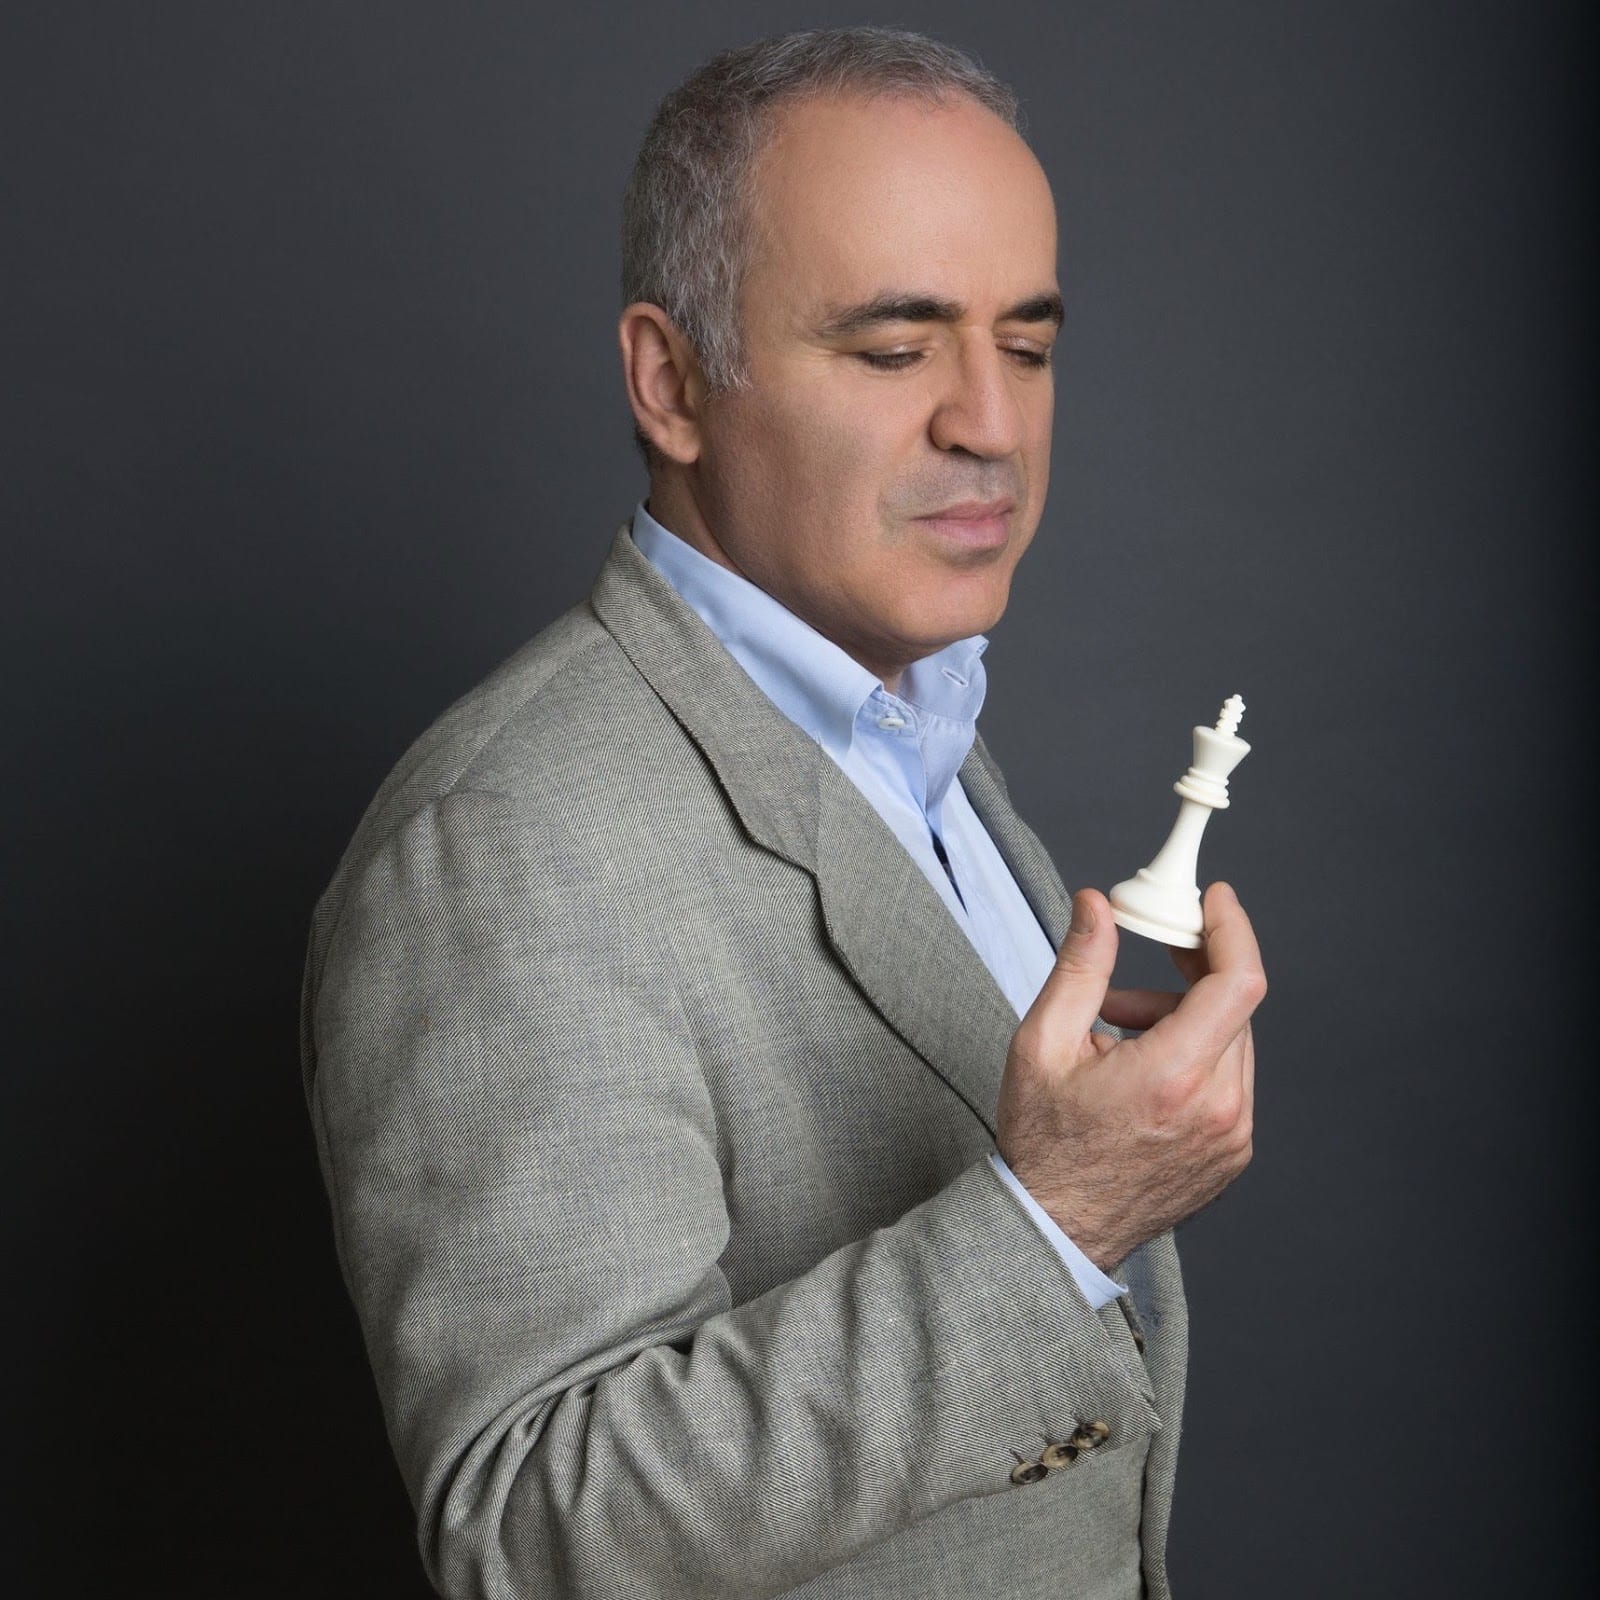 A Garry Kasparov MasterClass Chess Review